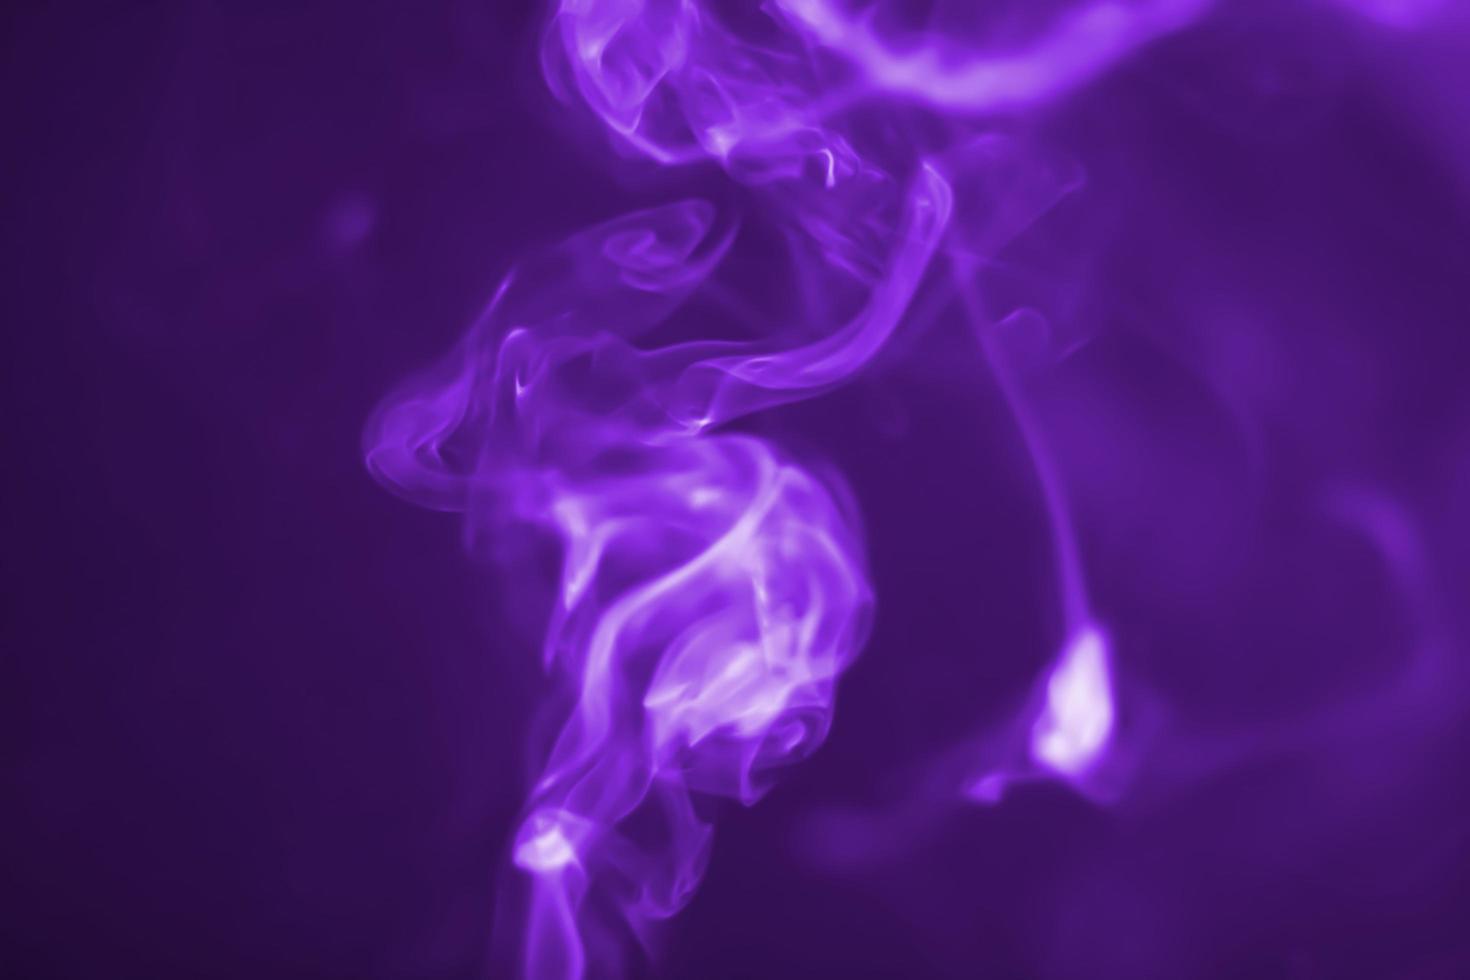 resumen fondo humo púrpura desenfoque foto